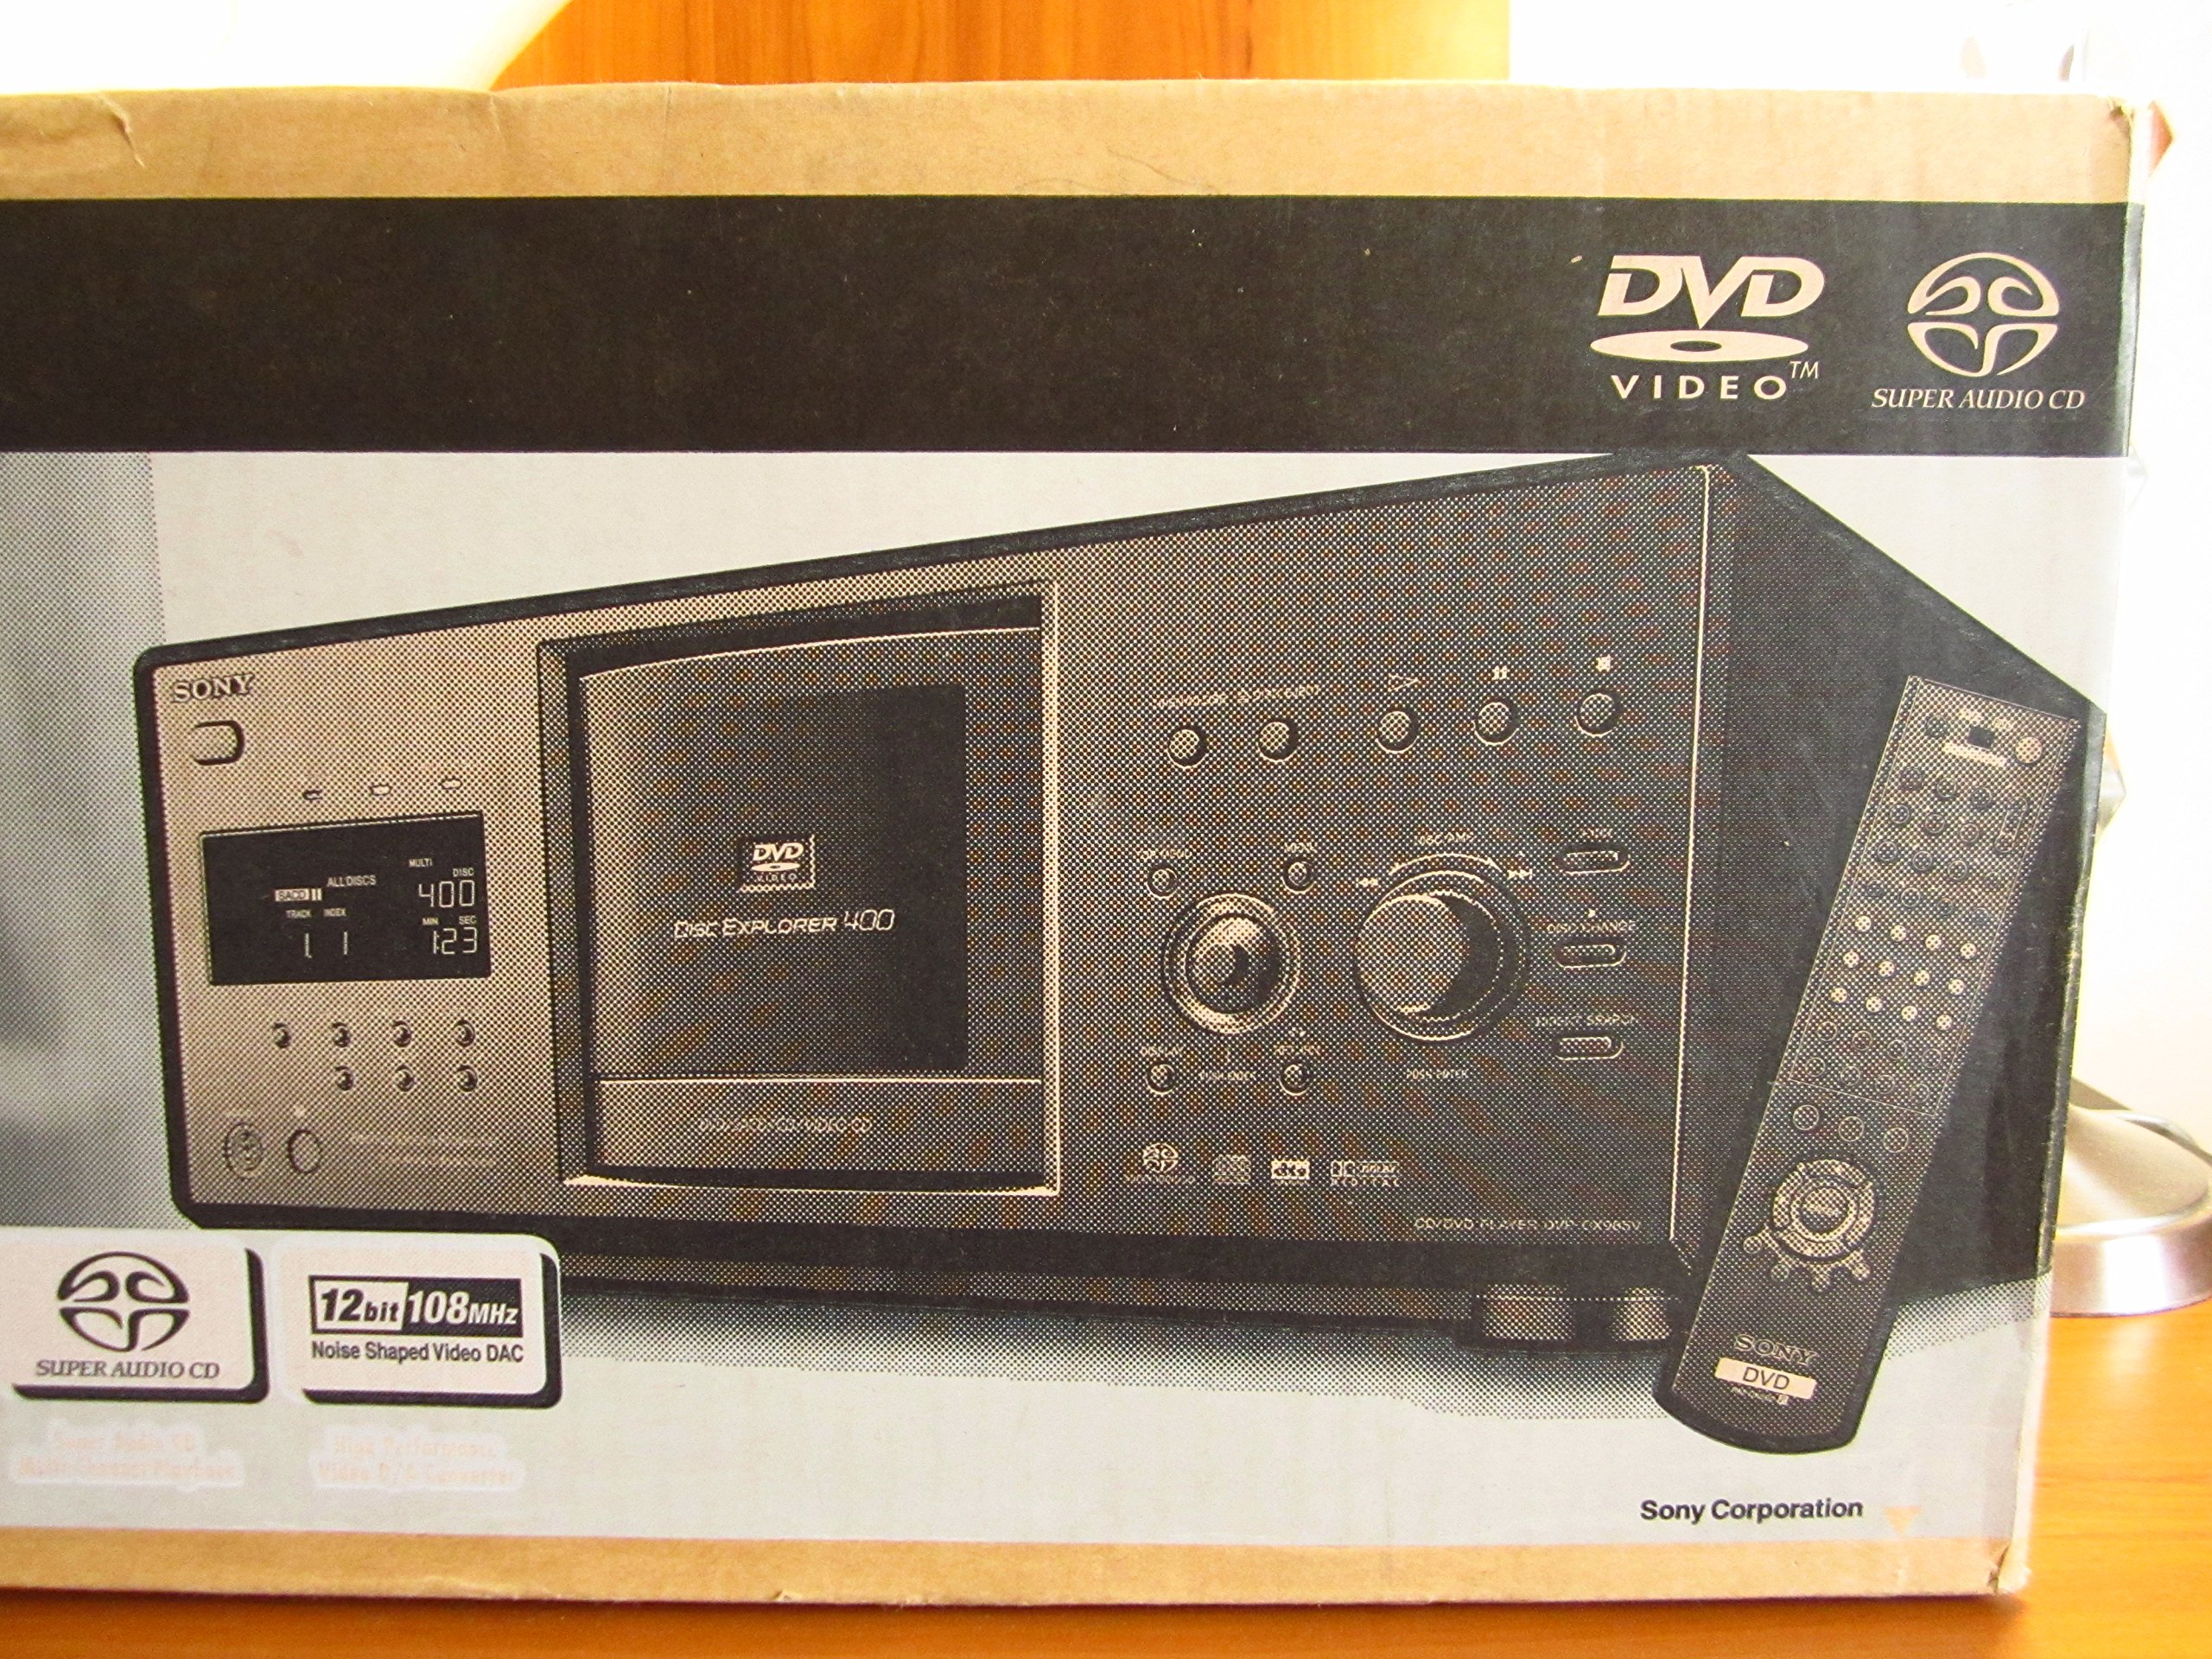 Sony DVP-CX985V 400 Disc Progressive DVD / SACD Player